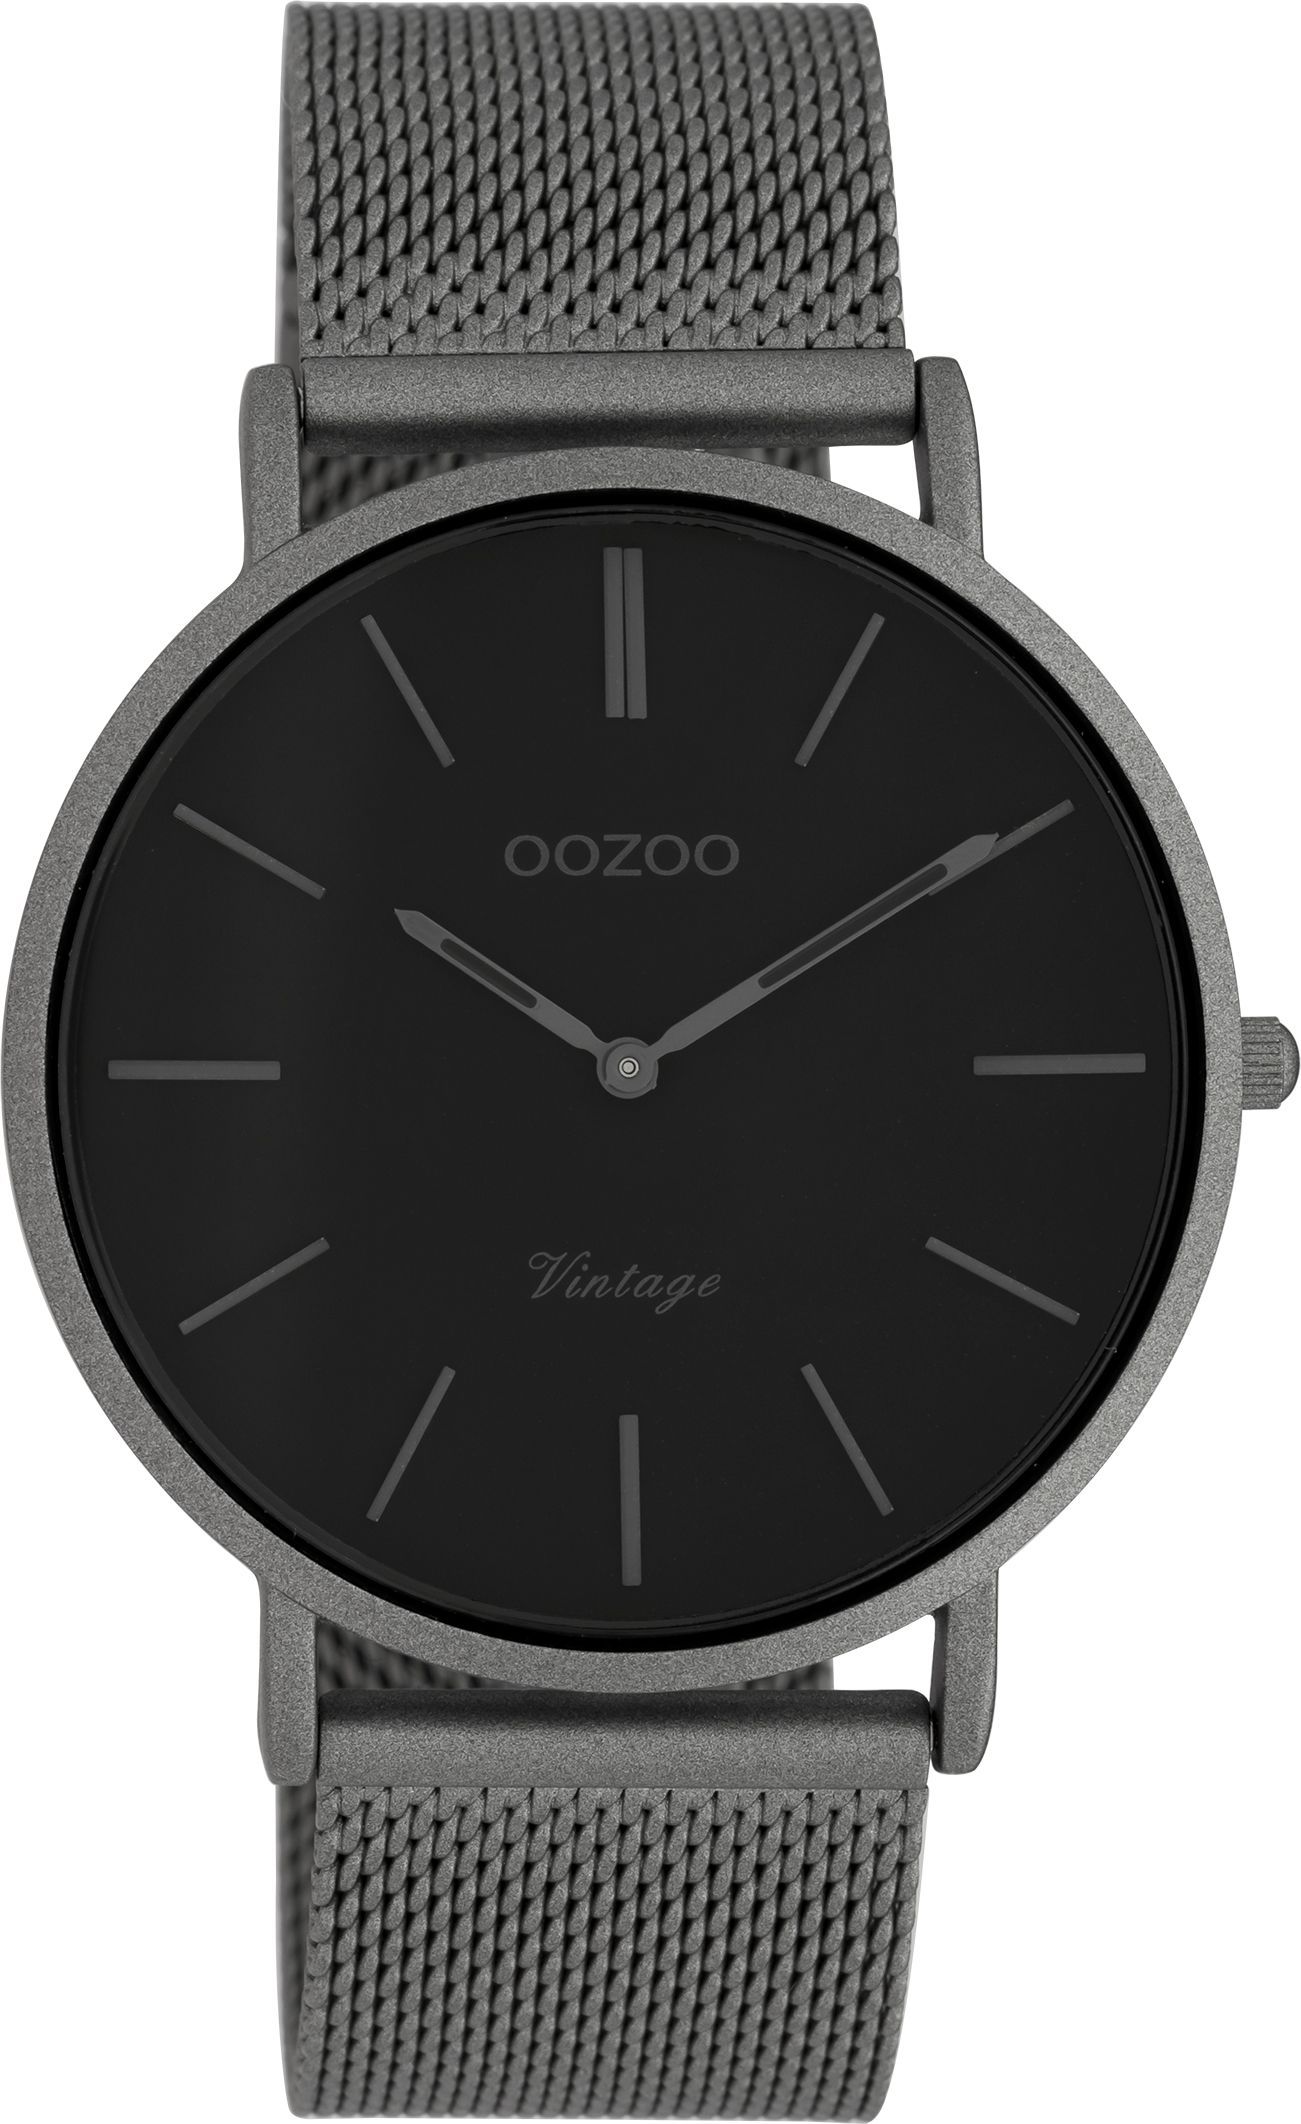 OOZOO Vintage C9929